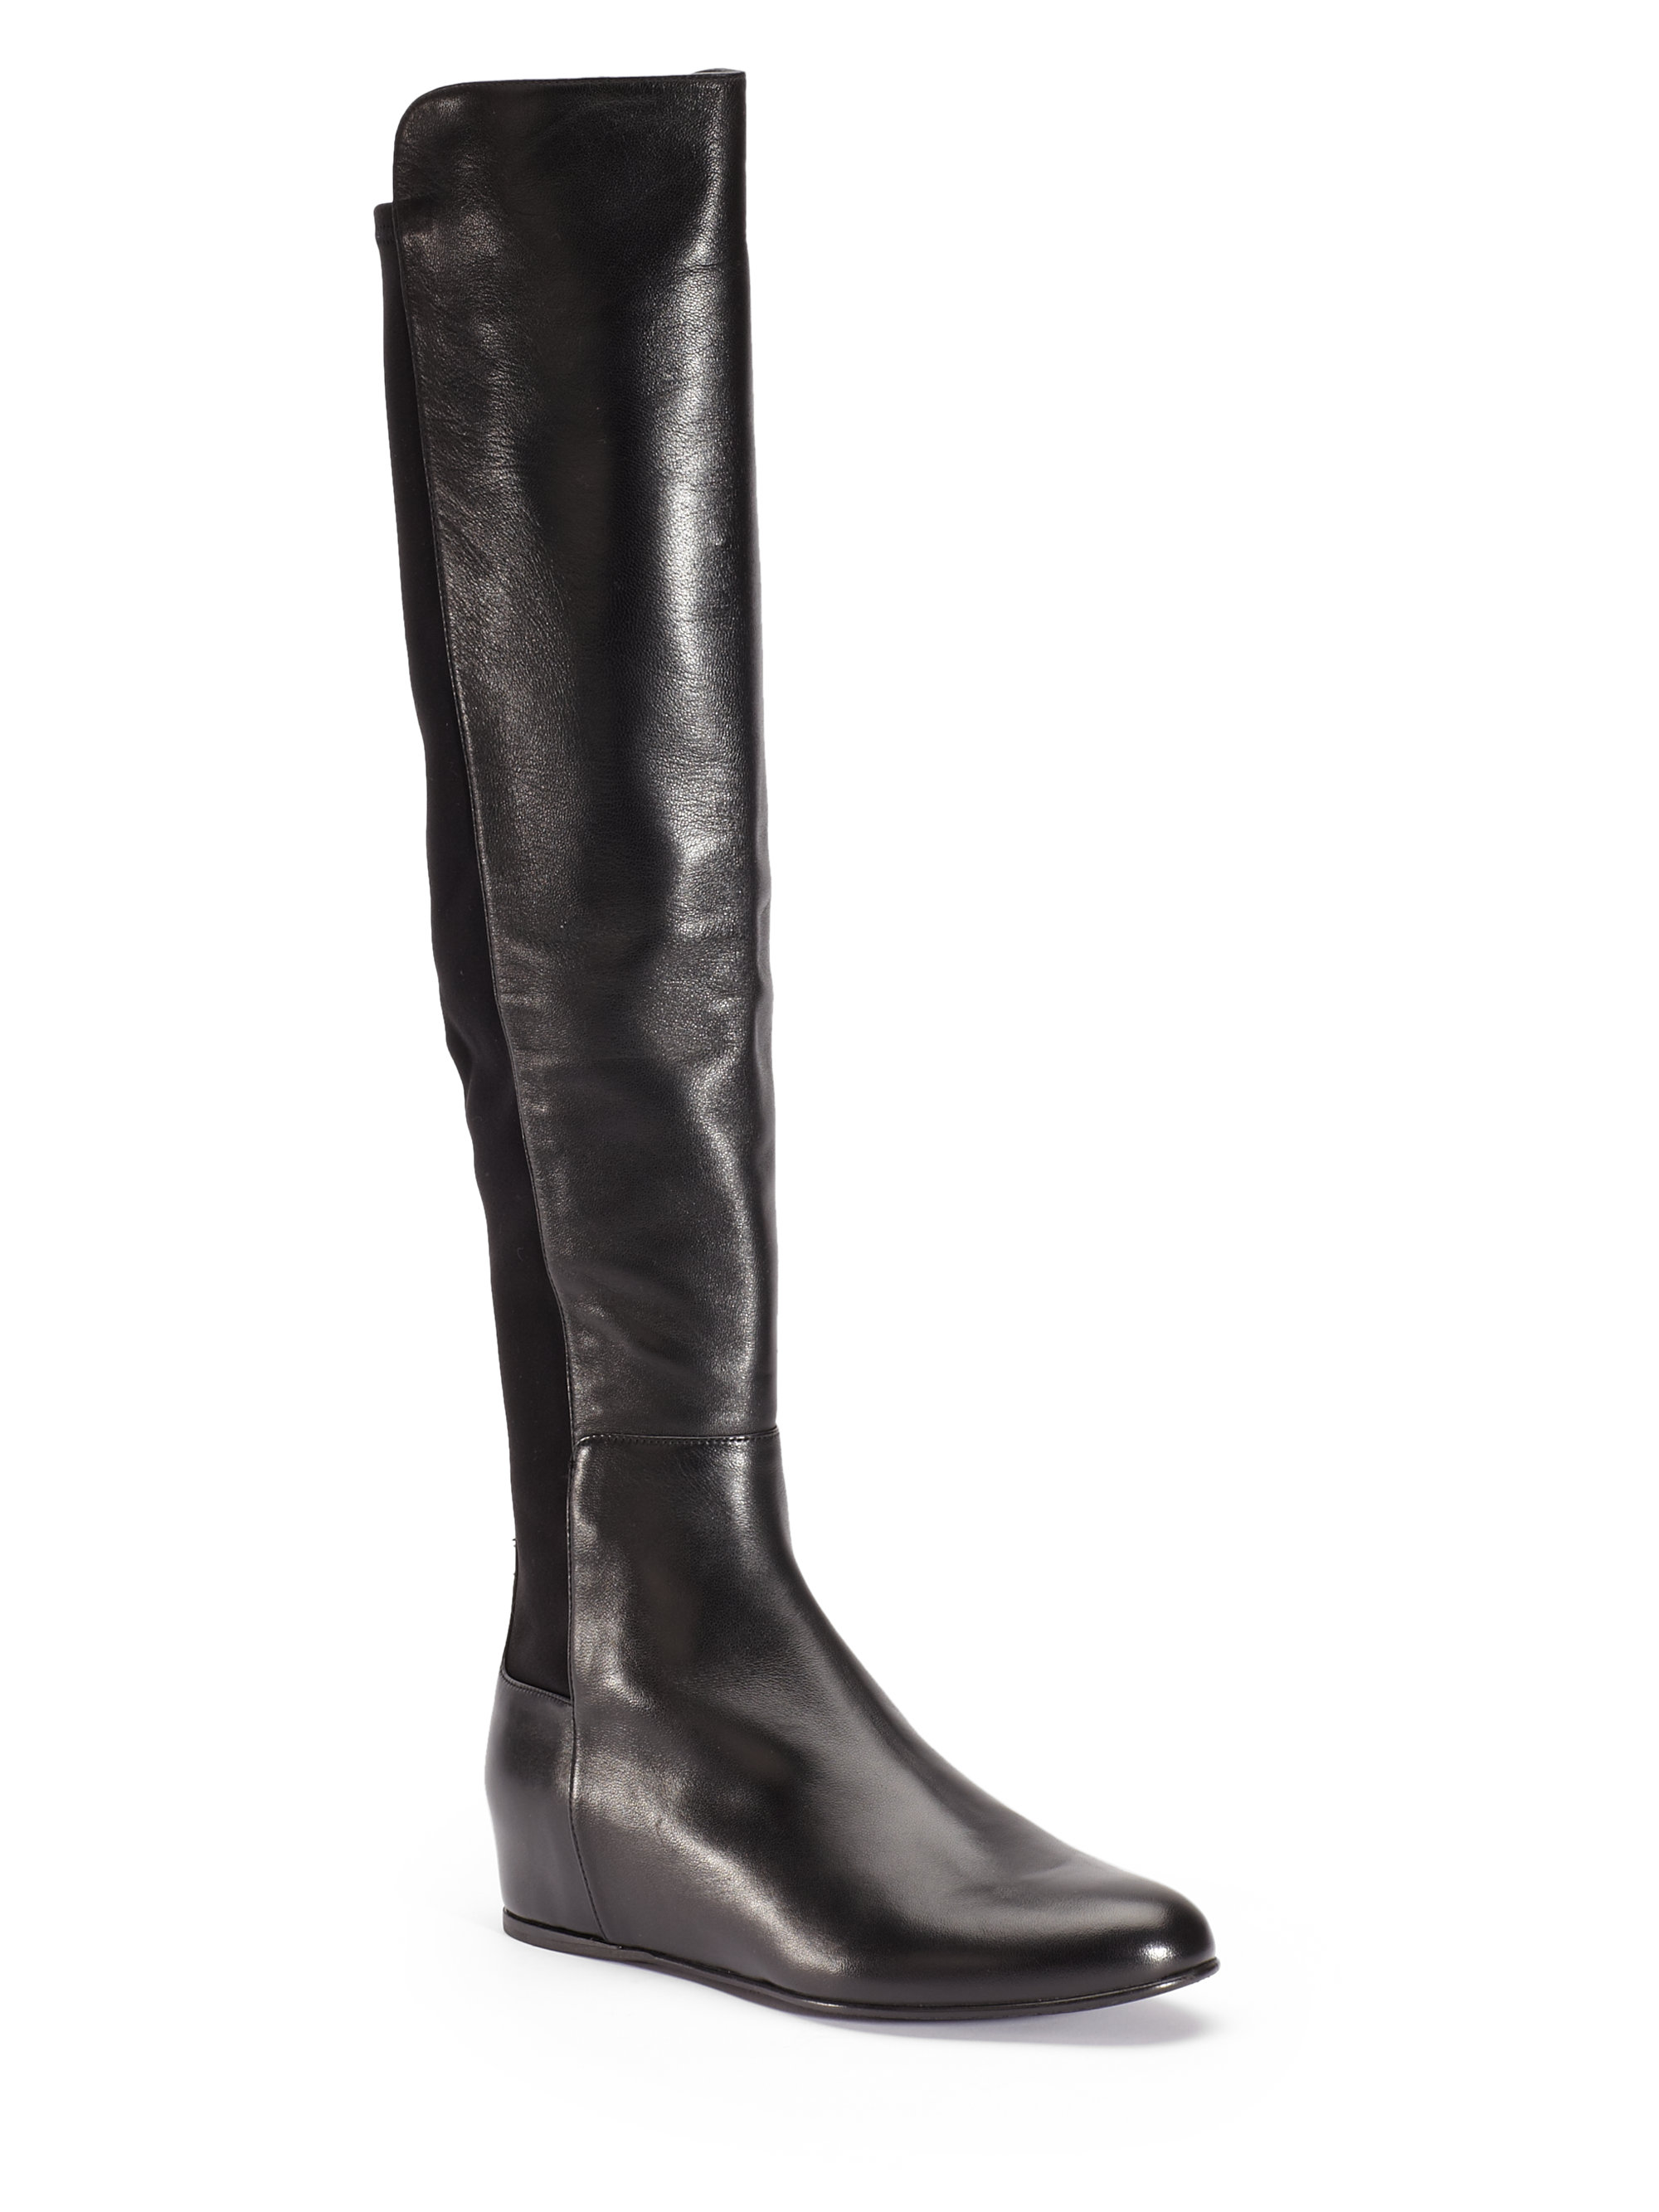 Stuart Weitzman Mainline Nappa Overtheknee Wedge Boots in Black | Lyst